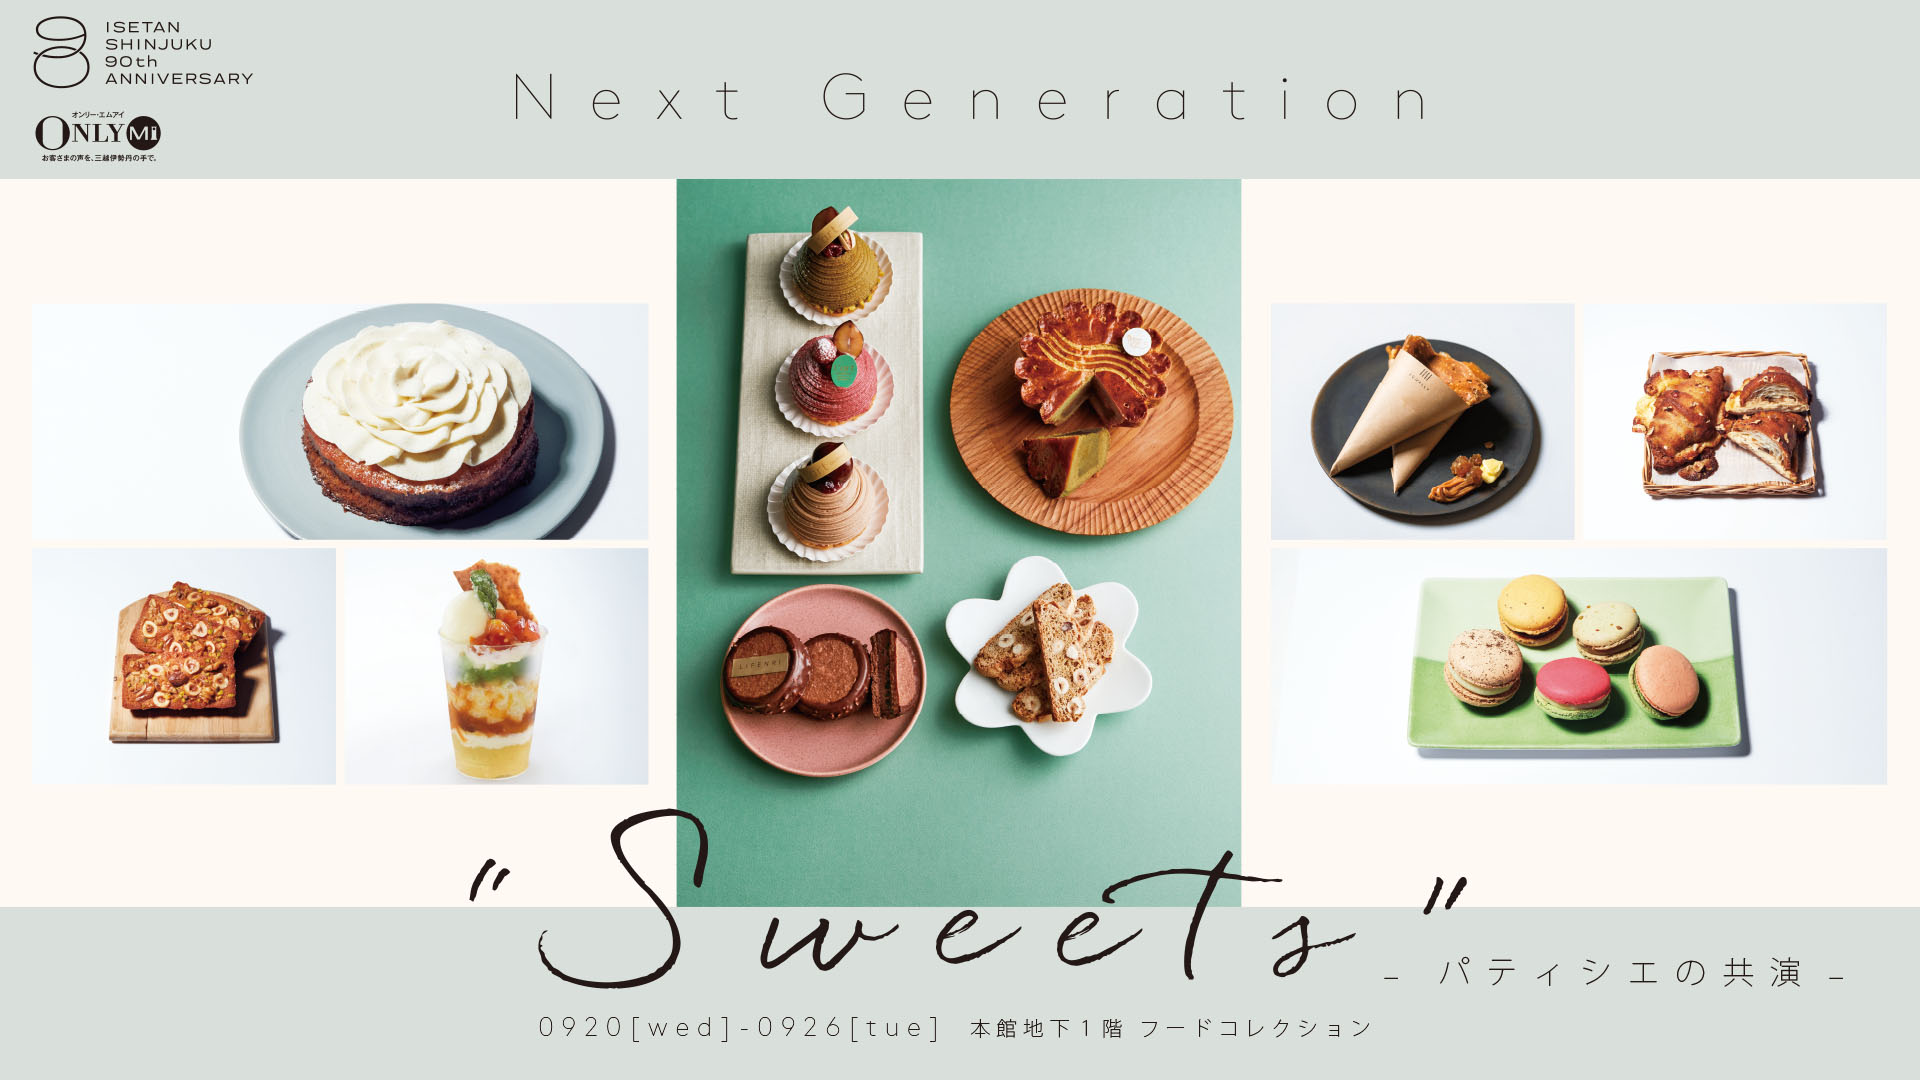 伊勢丹新宿店にて、9月20日(水)から「Next Generation Sweets ～パティシエの共演～」を開催！次世代のパティシエたちが考案したオリジナルスイーツを実演販売します。のサブ画像1